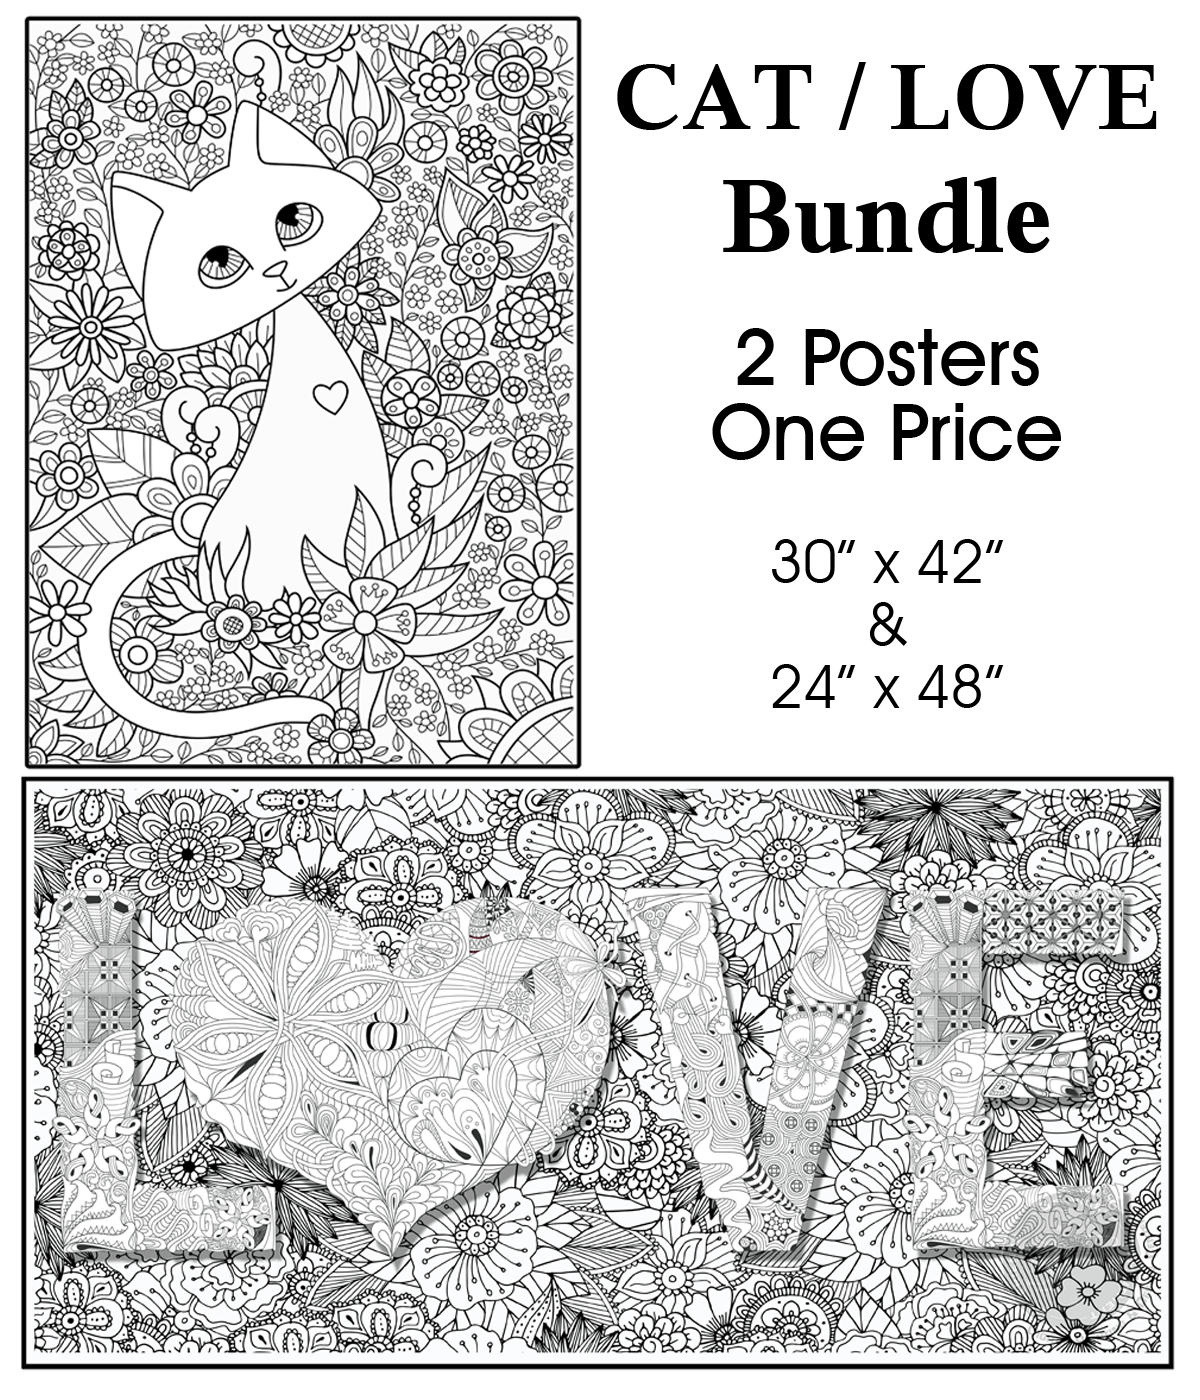 CAT / LOVE - Bundle of 2 Posters for $50 - SJPrinter 